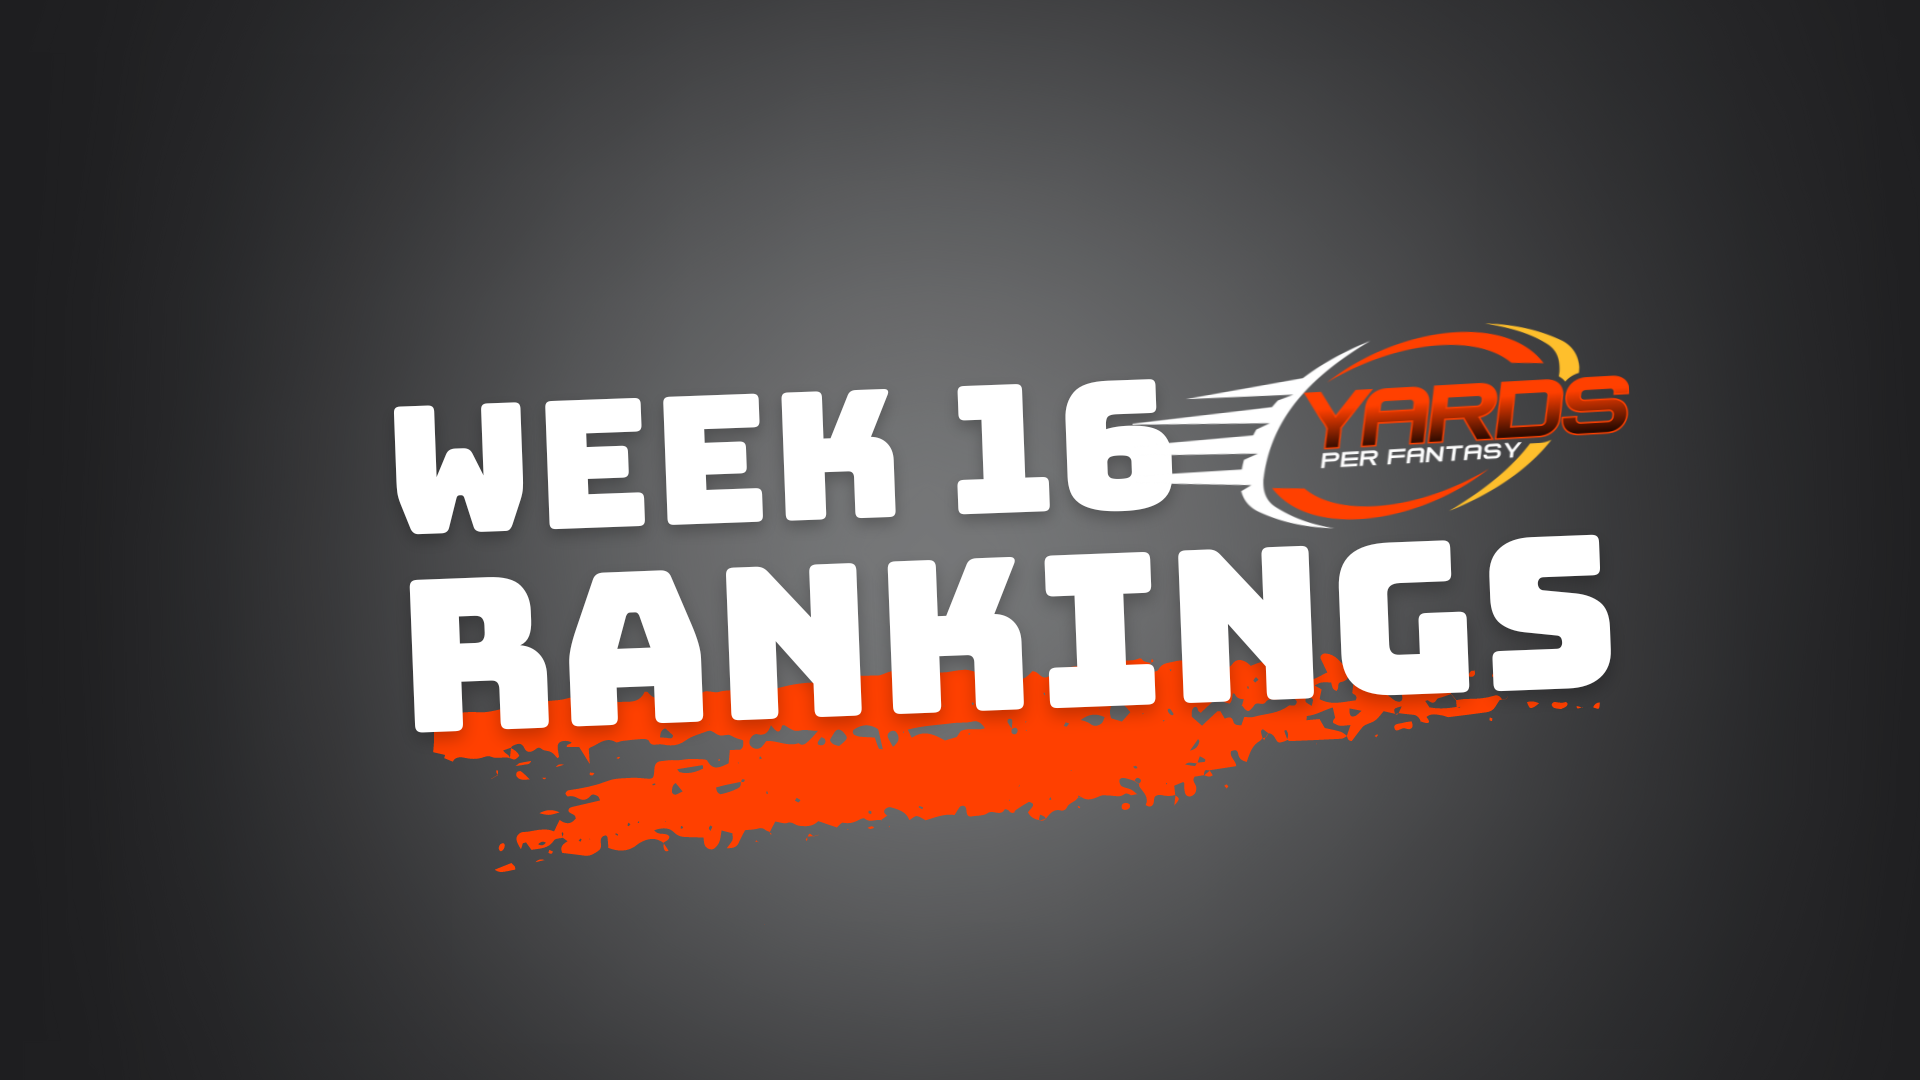 week 16 fantasy rankings